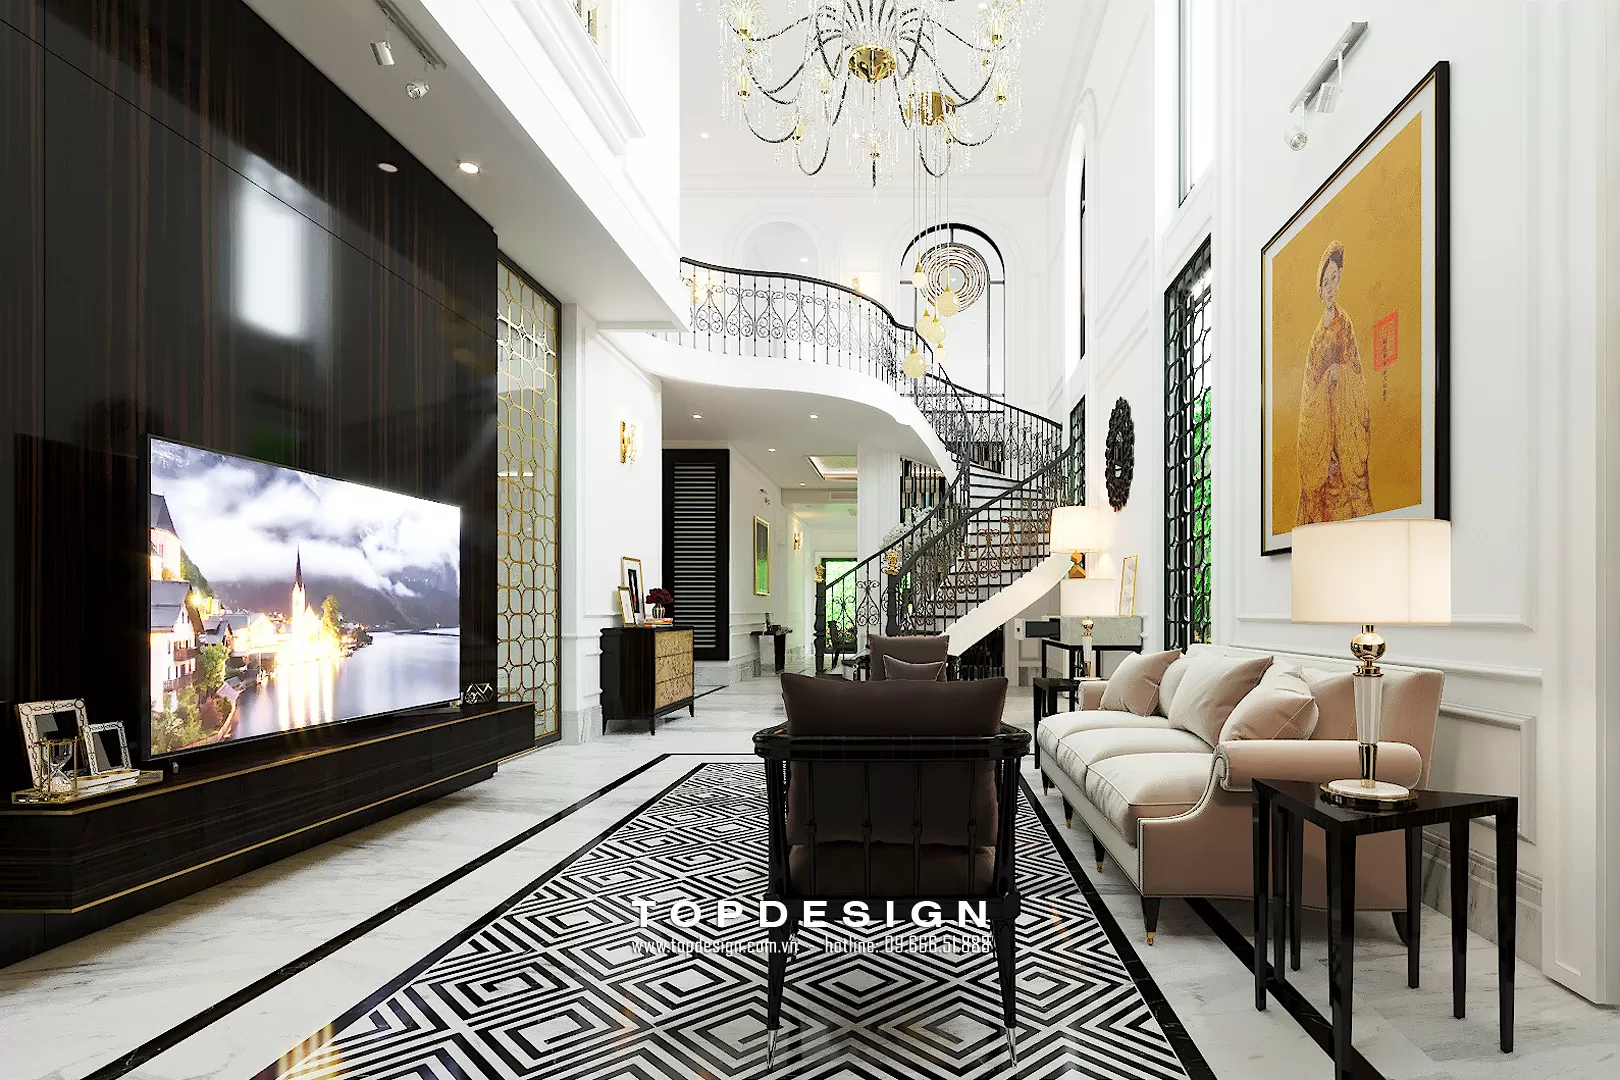 2.Thiết kế nội thất biệt thự phong cách Luxury - topdesign